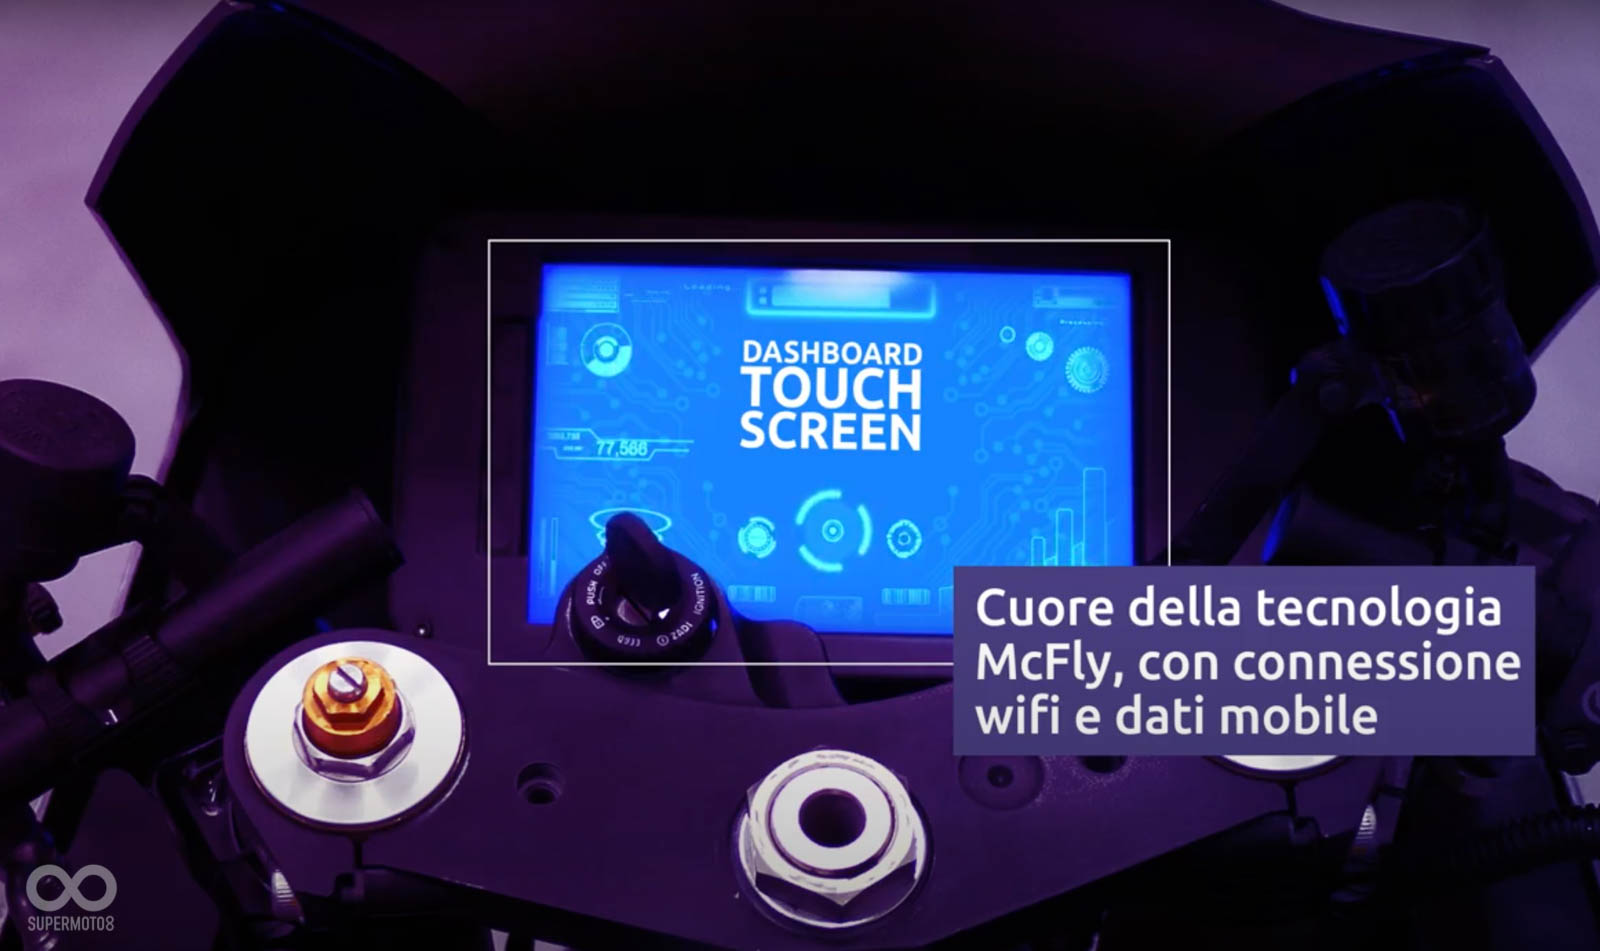 儀表採用8吋觸控螢幕設計，並且可從儀表上直接切換不同的引擎聲浪、動力模式